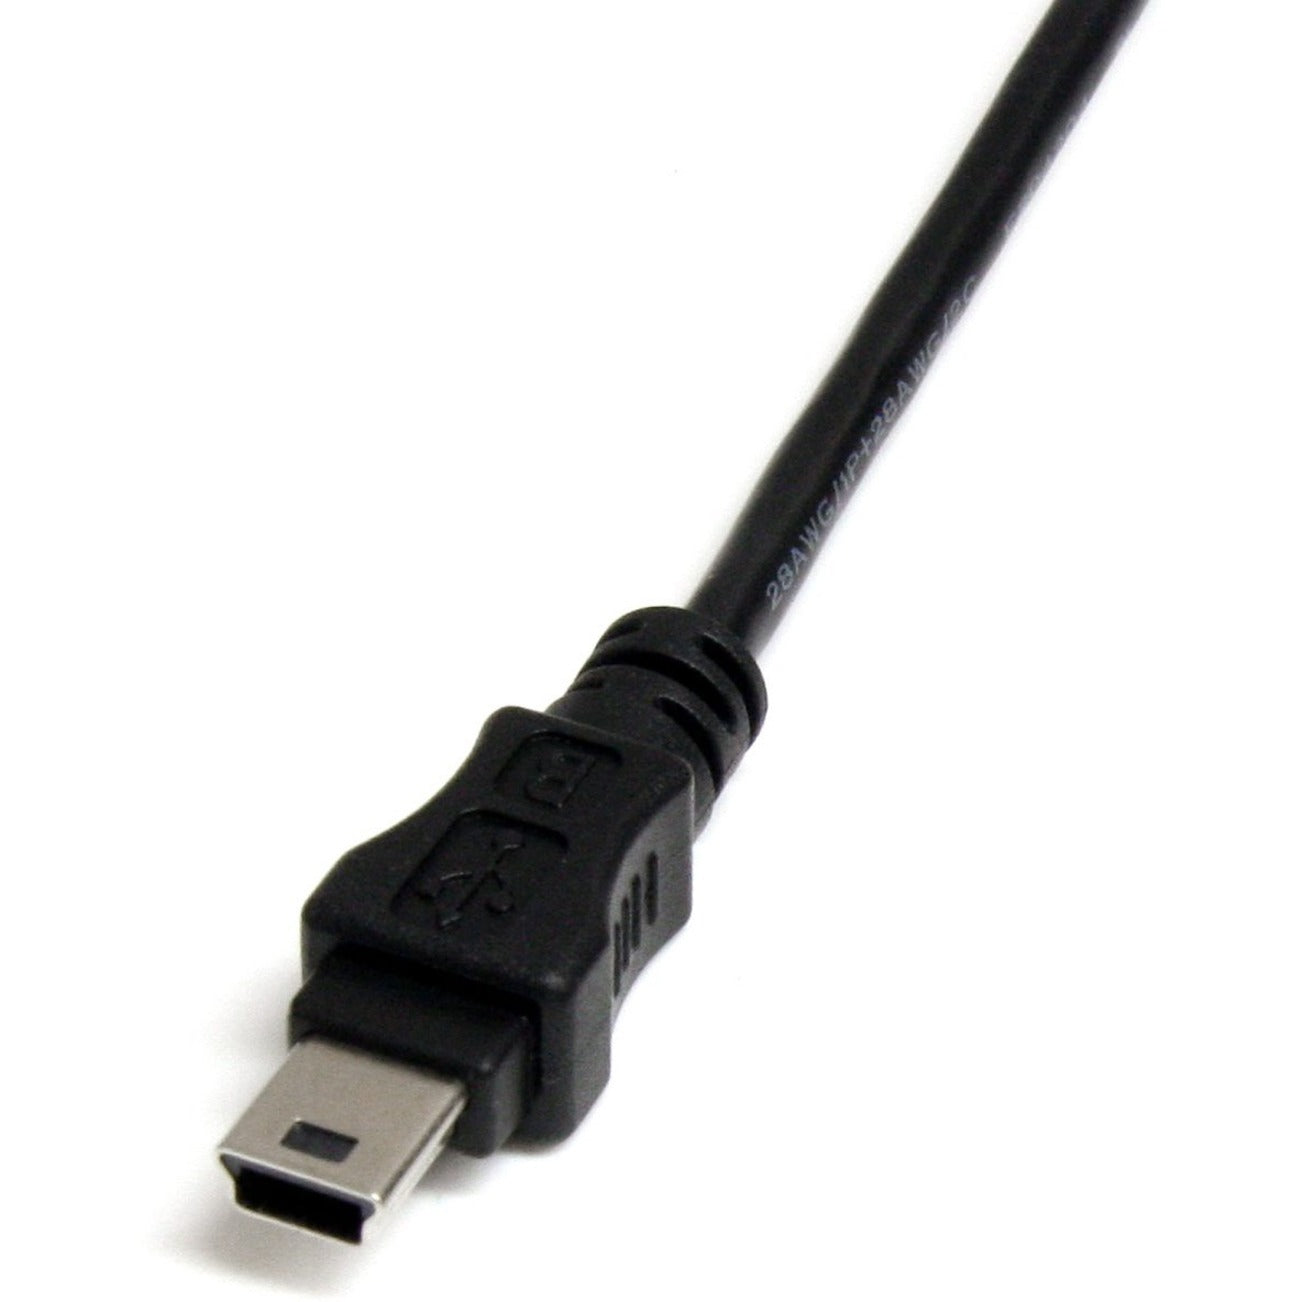 StarTech.com USBMUSBFM1 1 ft Mini USB 2.0 Kabel USB A zu Mini B F/M Datenübertragungskabel